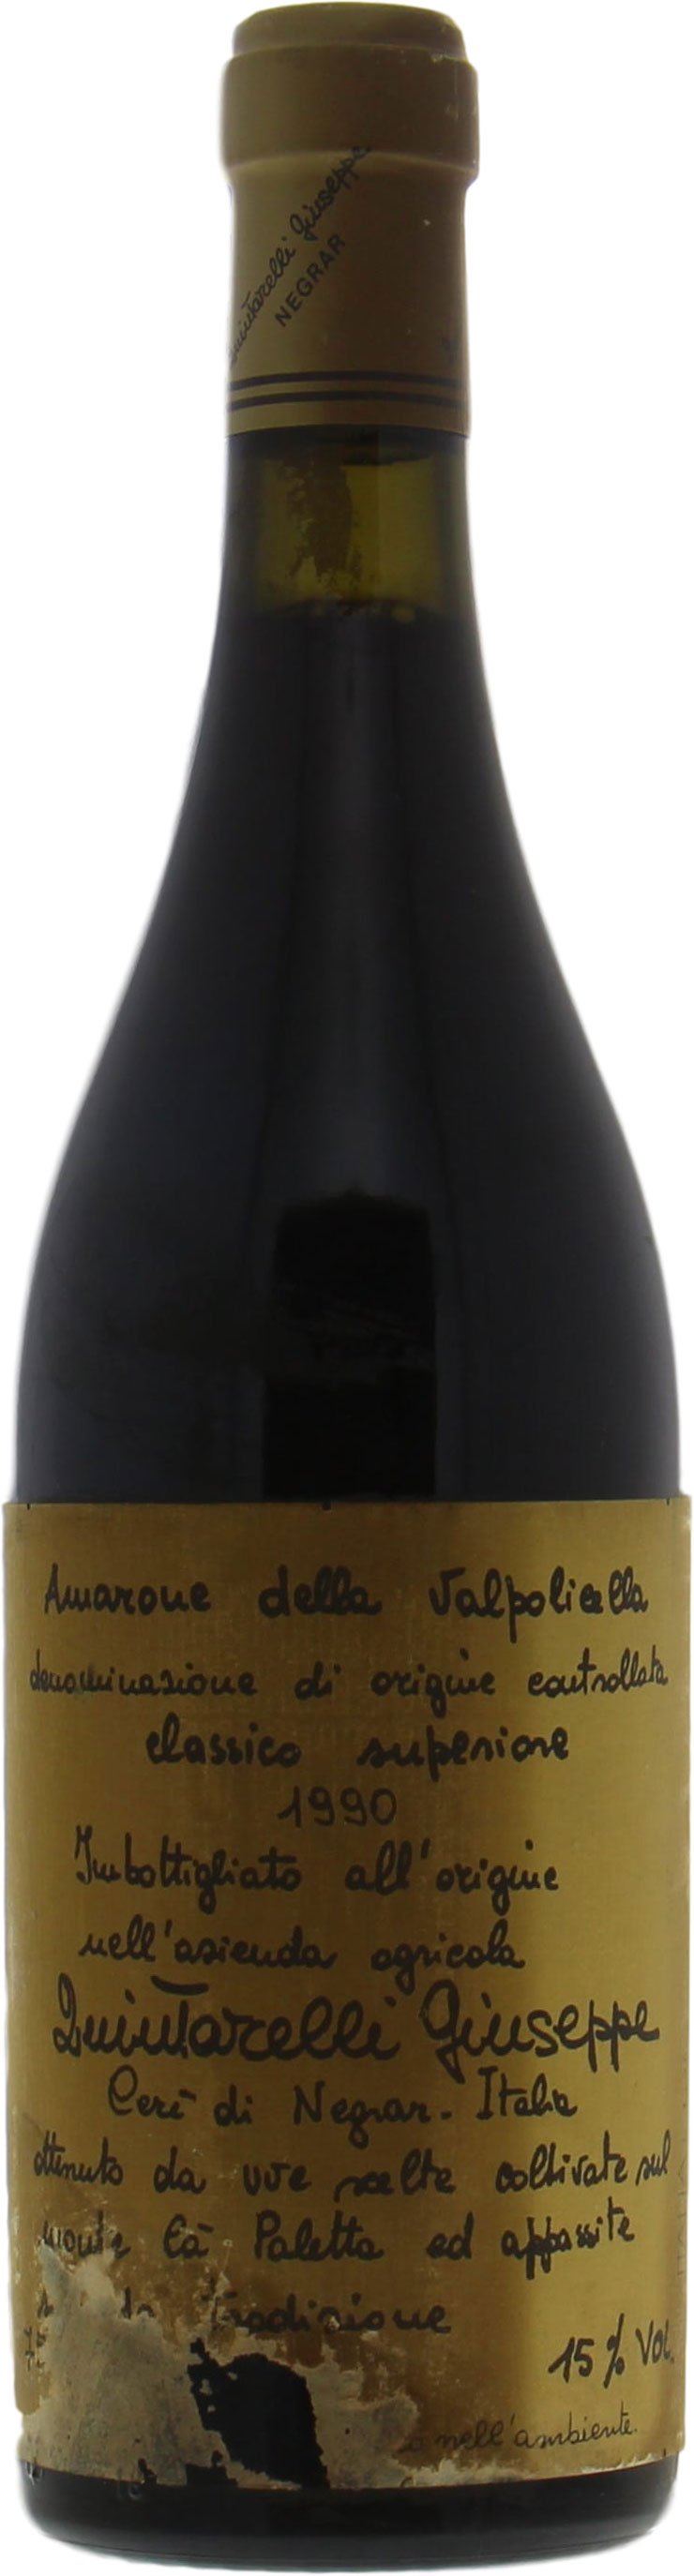 Quintarelli  - Amarone della Valpolicella 1990 Bin stained label